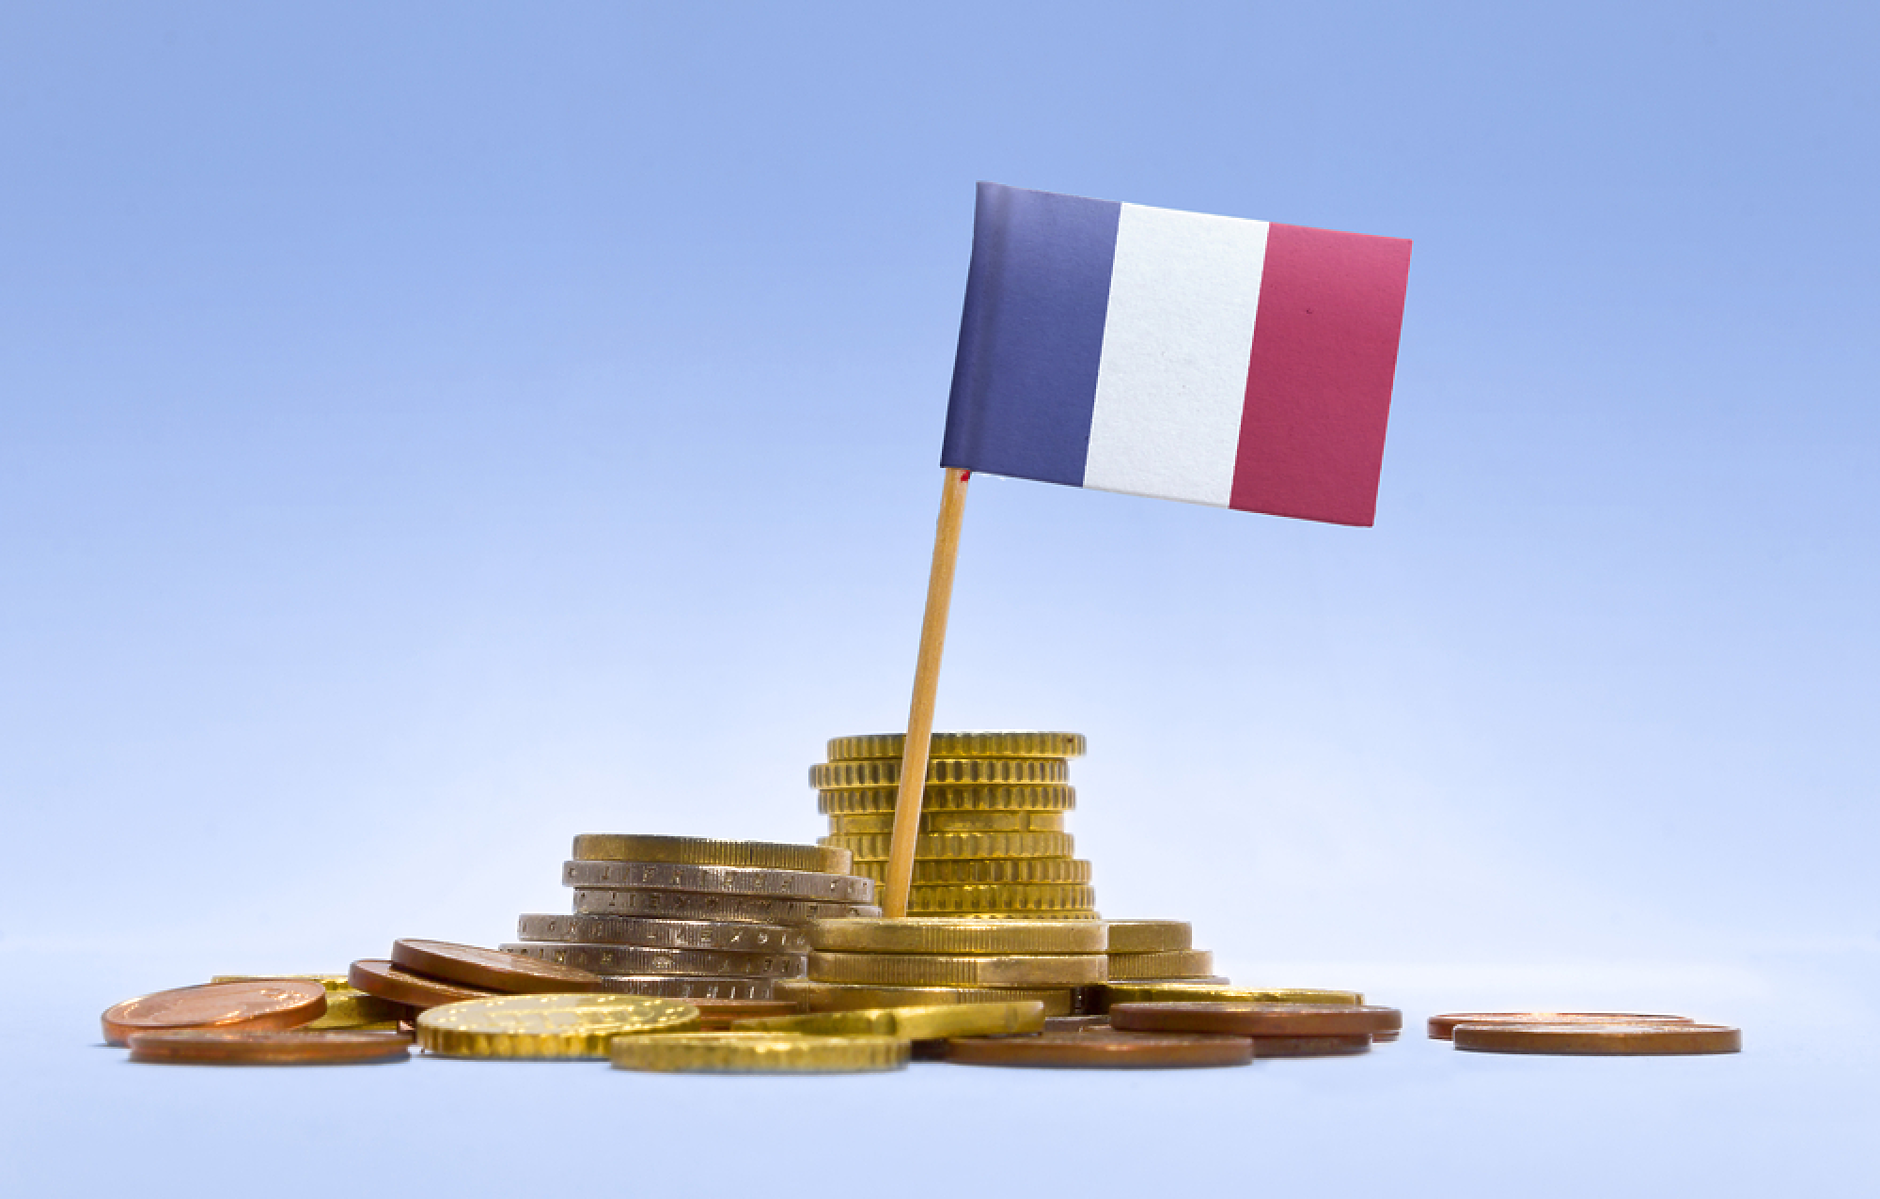 Продажбата на облигации във Франция в навечерието на вота - компас за настроенията на инвеститорите